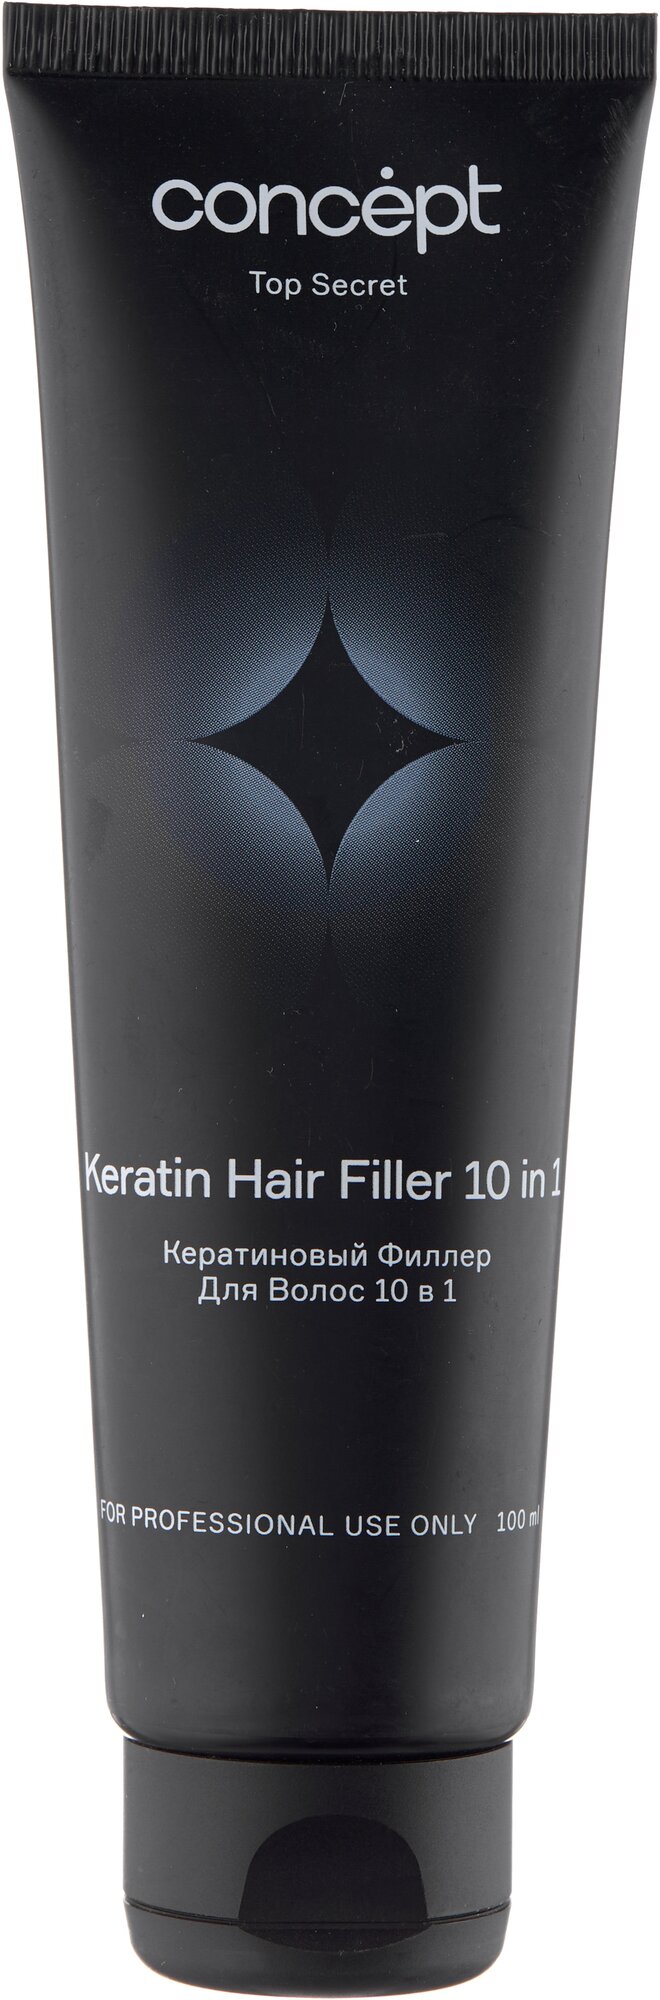 Concept Top Secret Кератиновый филлер для волос 10 в 1